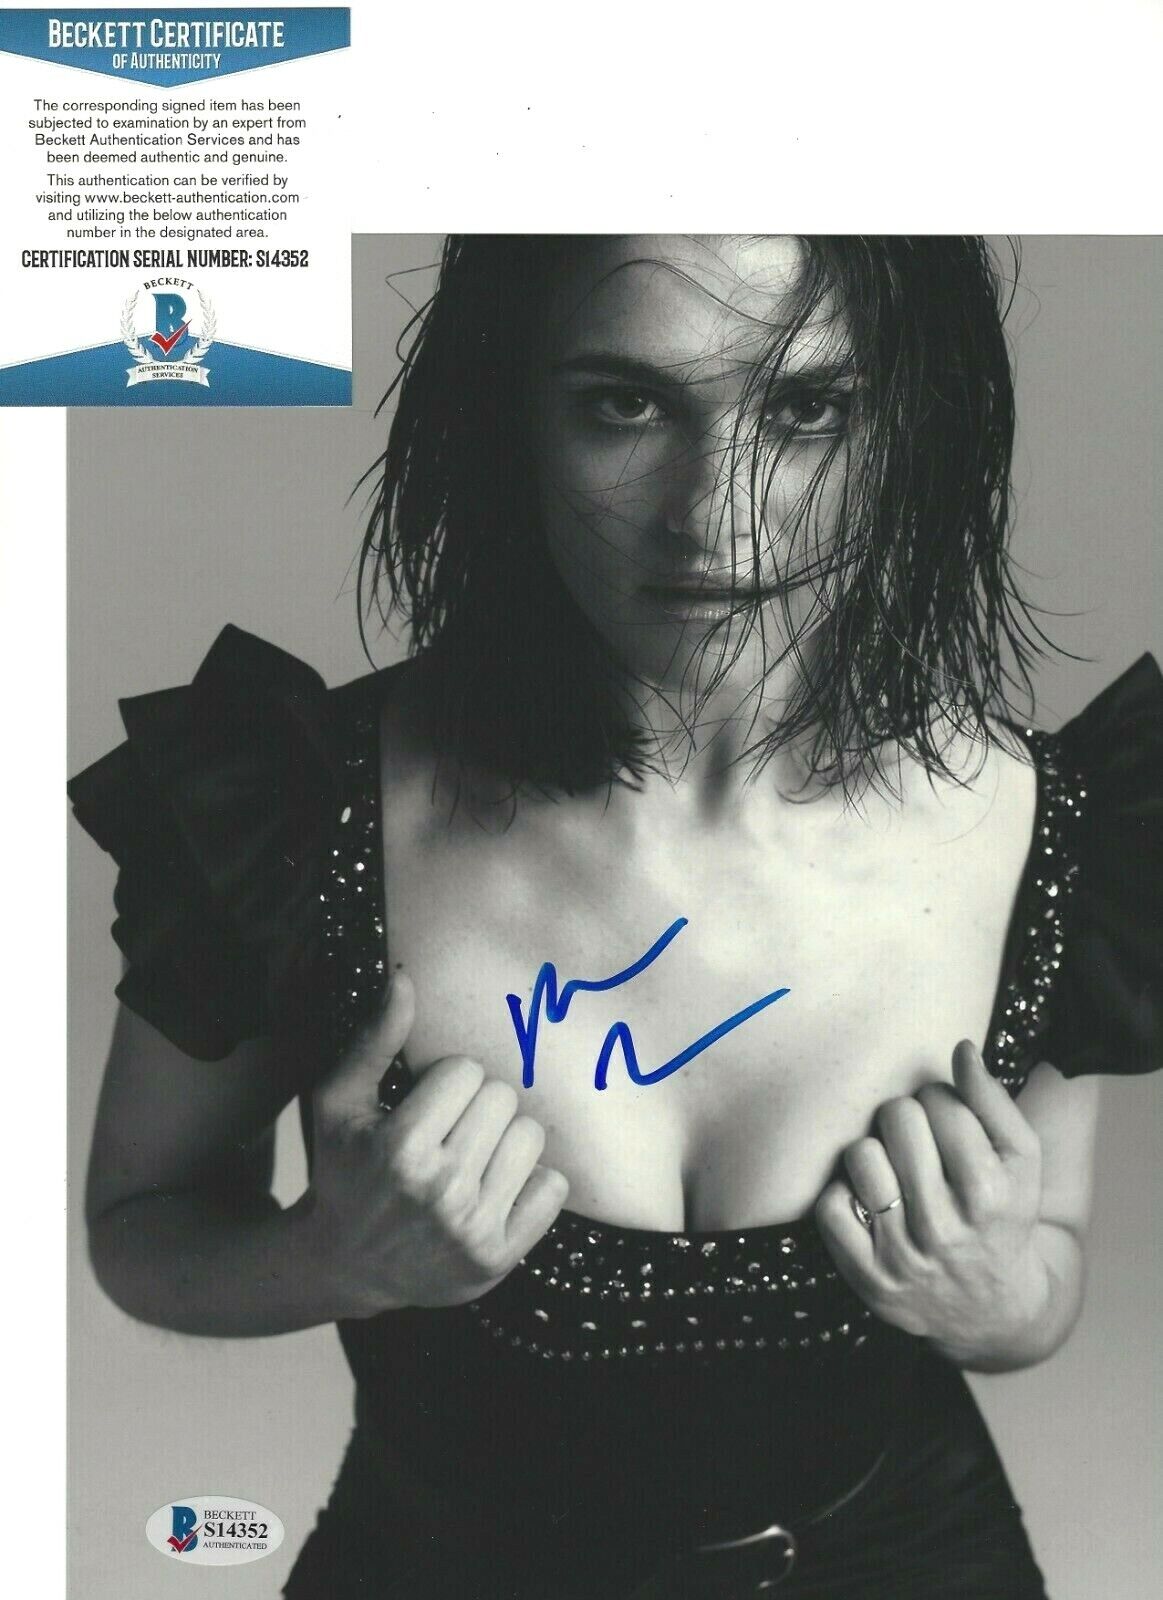 SEXY ACTRESS RACHEL WEISZ HAND SIGNED 8X10 Photo Poster painting BECKETT COA THE LOBSTER MUMMY